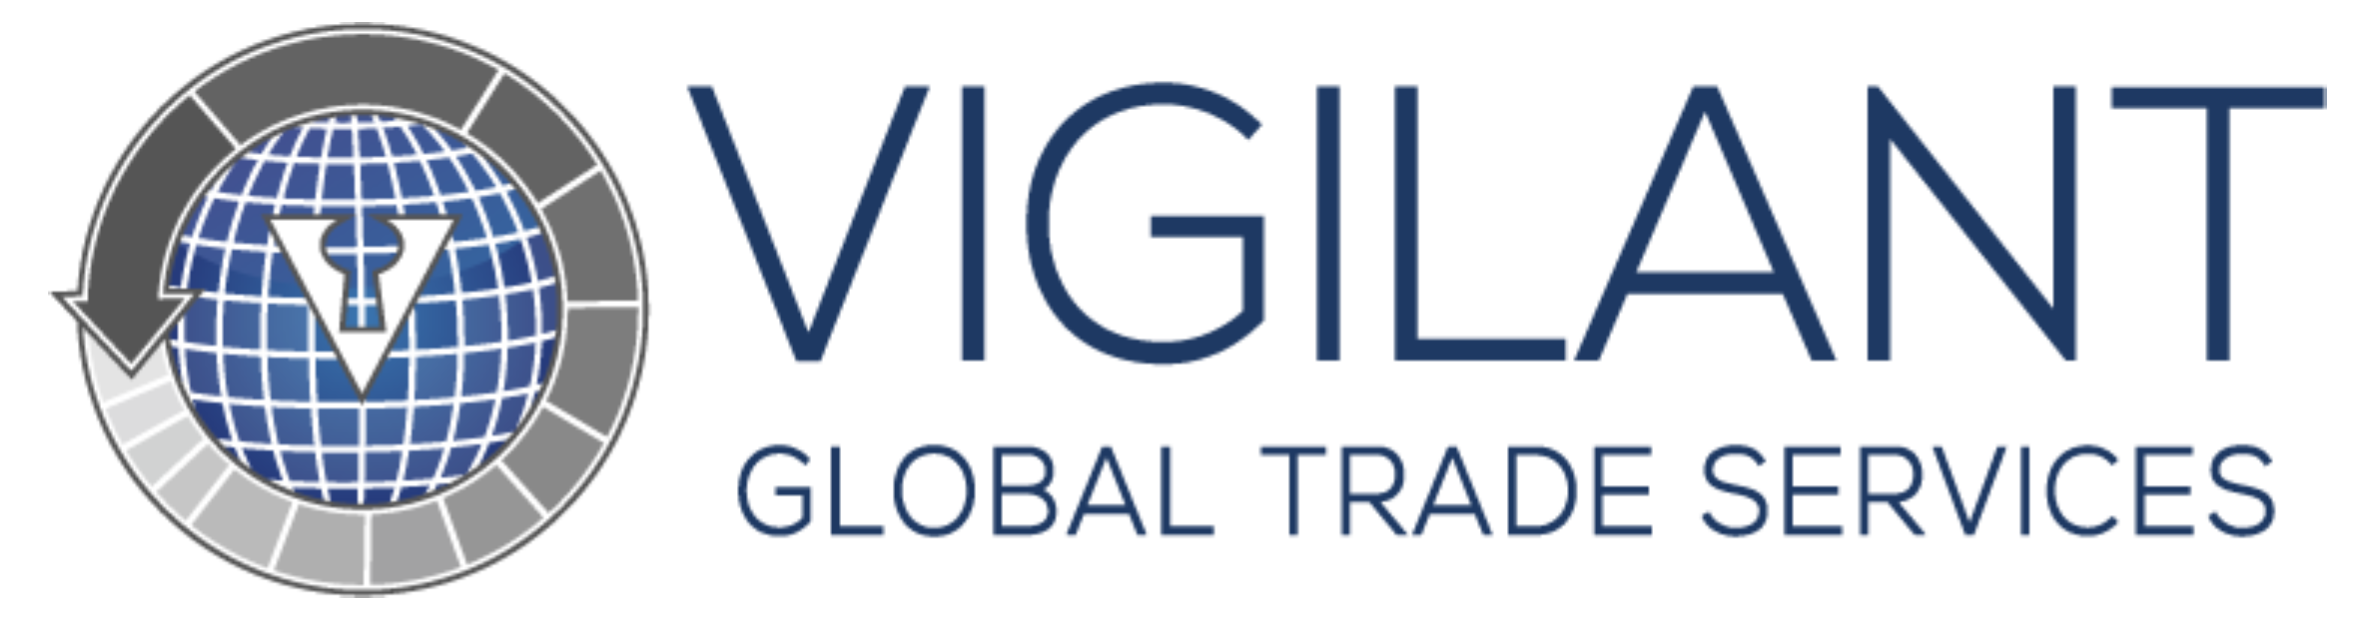 Vigilant Global Trade Services